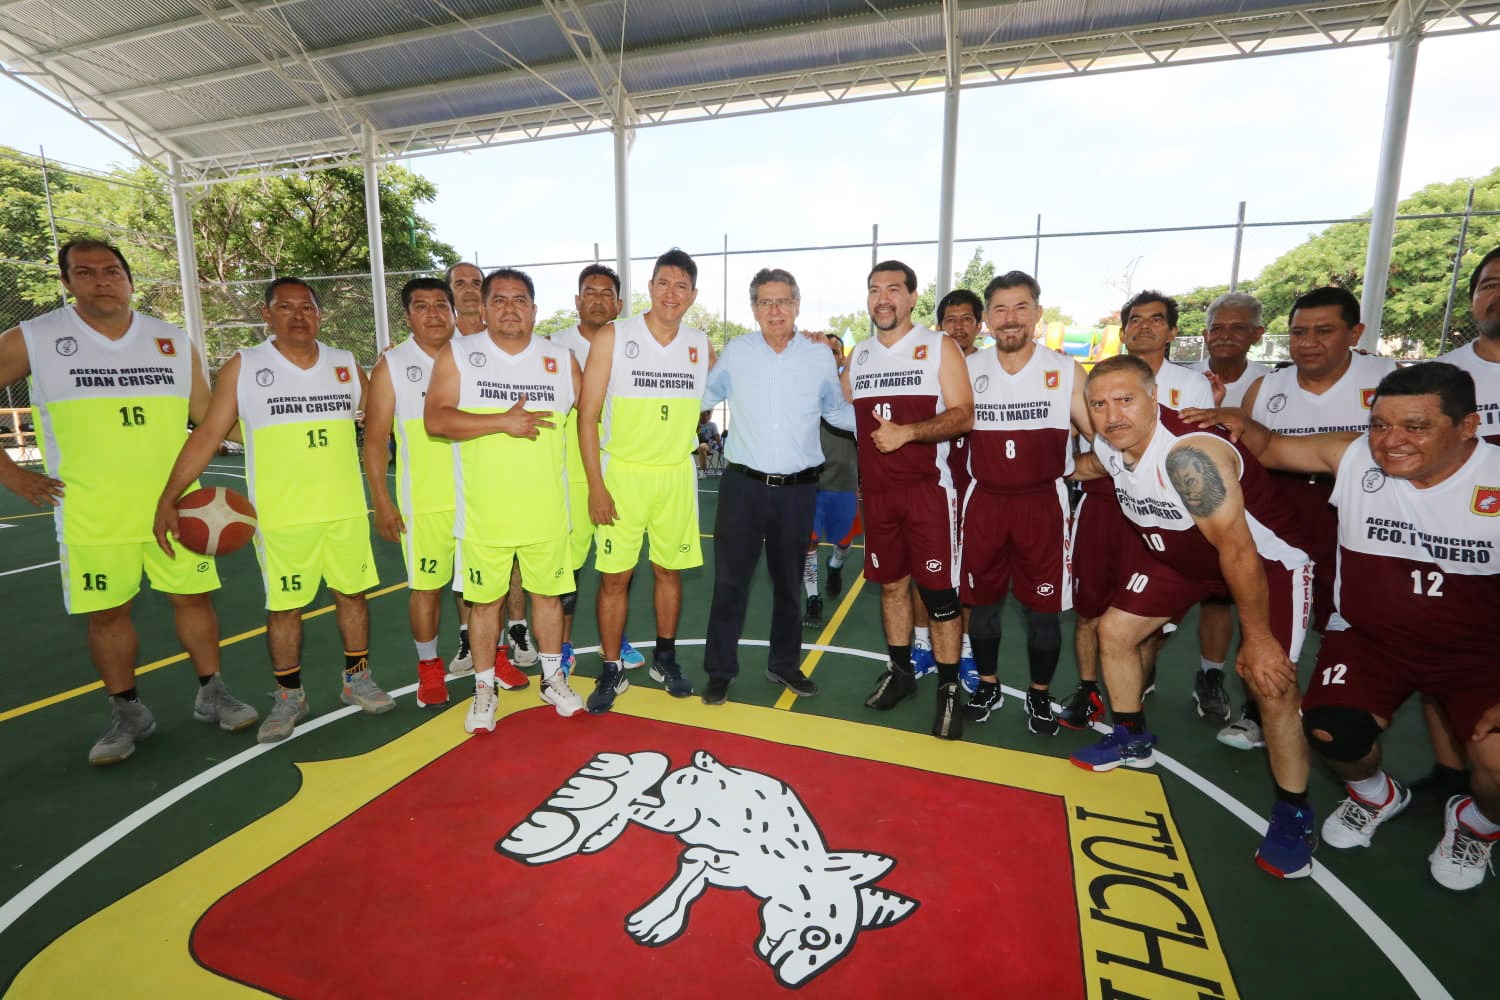 Carlos Morales continúa su Compromiso con el Deporte al Inaugurar Nuevo Domo en La Herradura